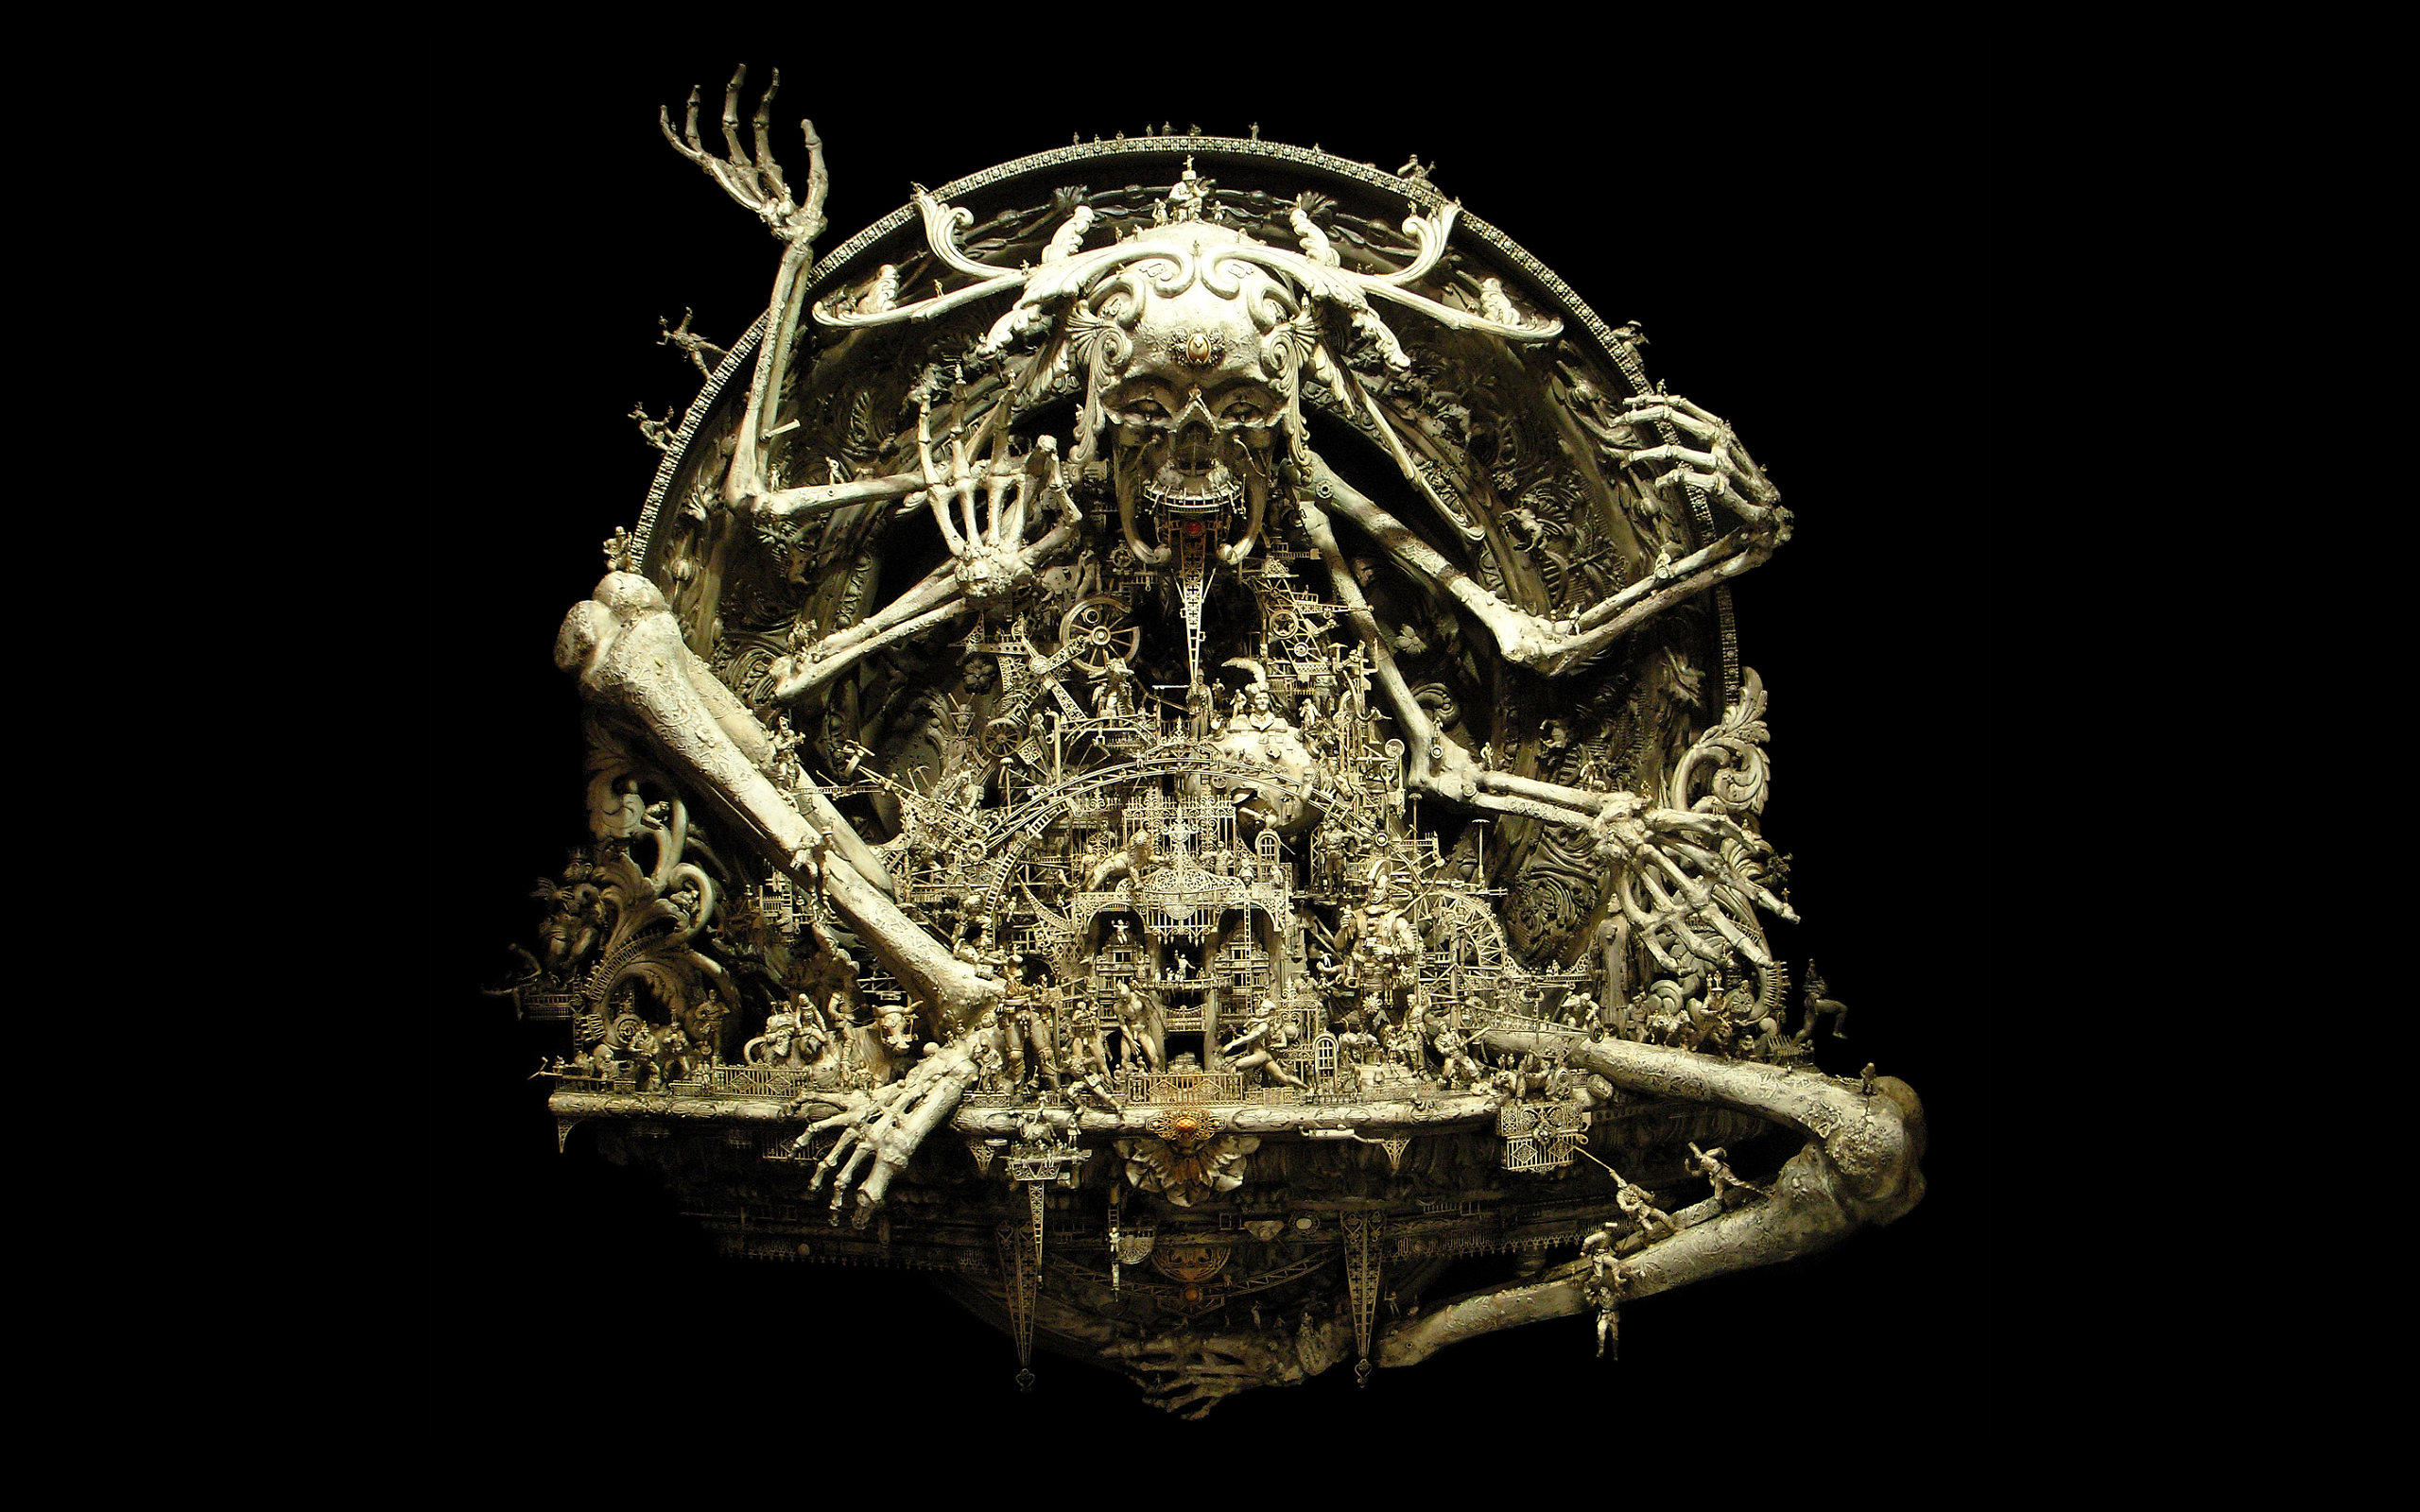 sculptures, bones, kris kuksi, Divinity, black background - desktop wallpaper